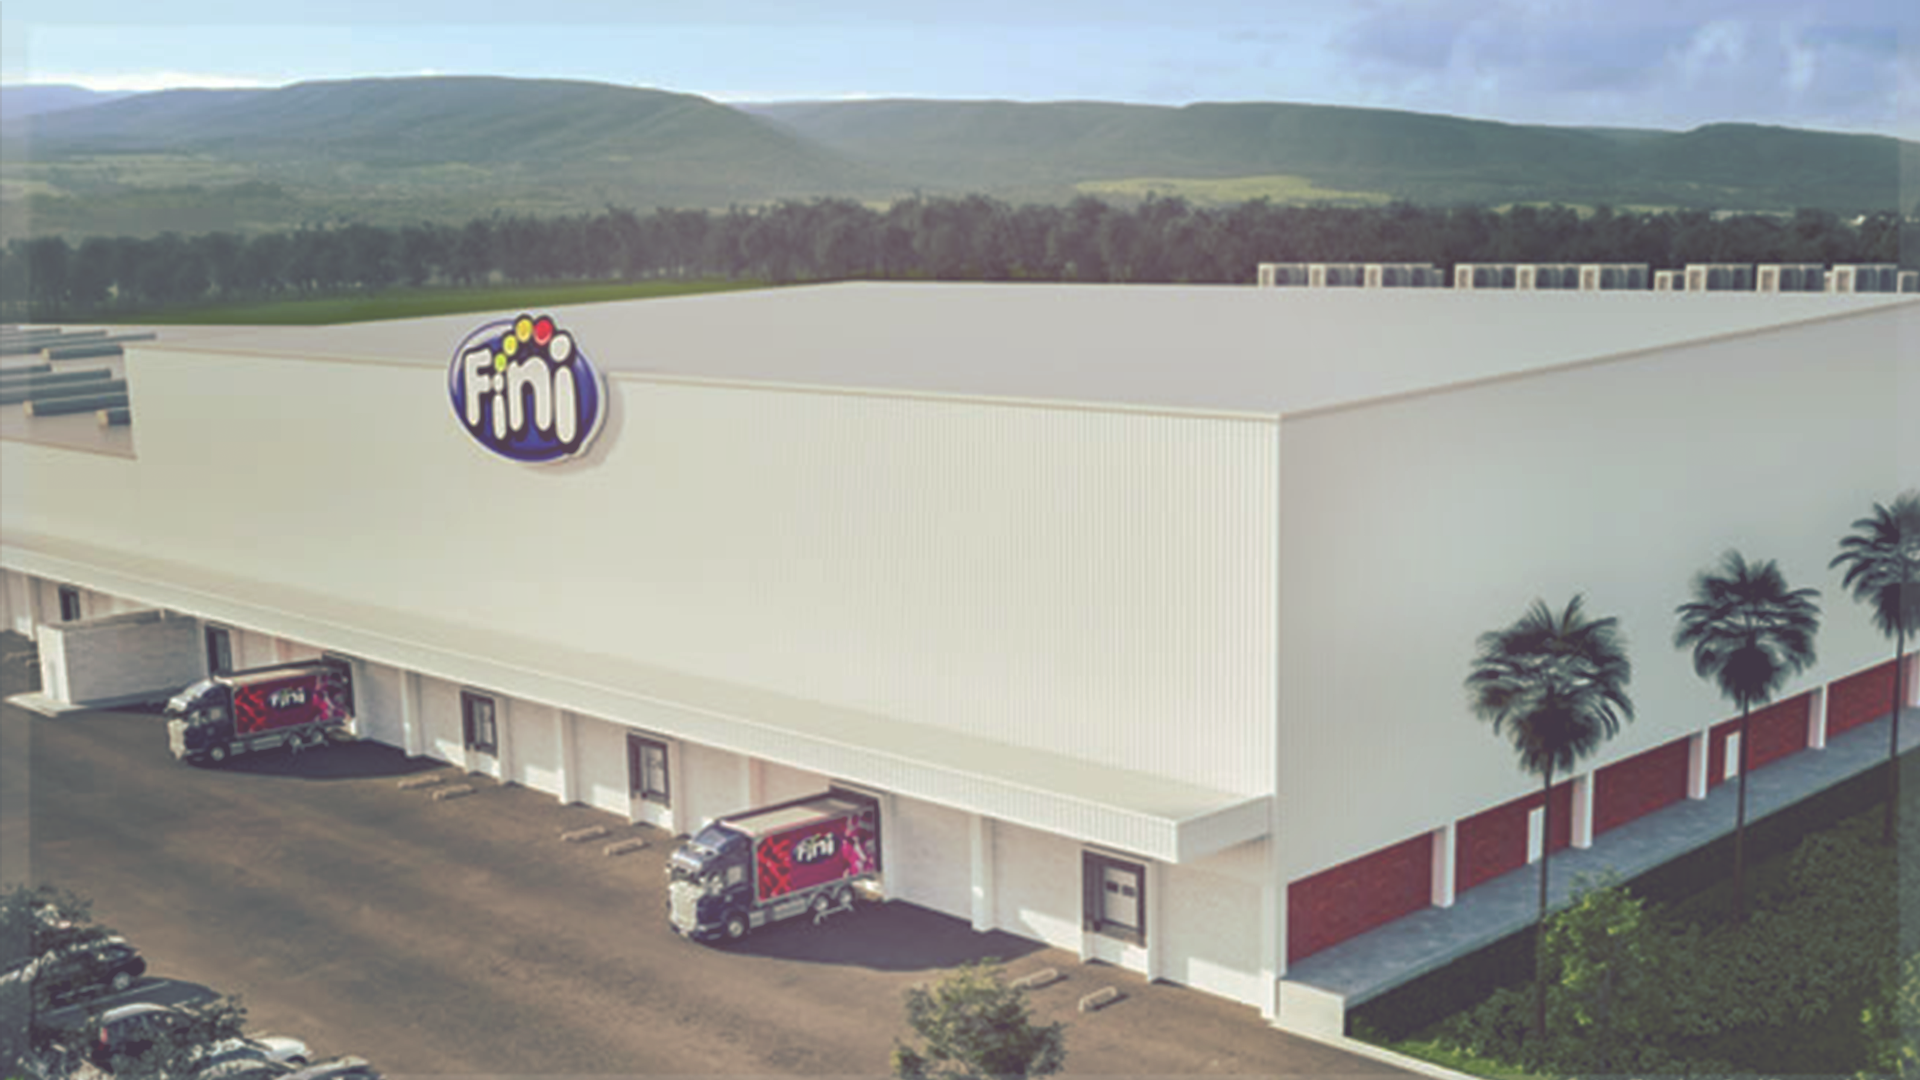 ‘The Fini Company’ incrementará ventas un 30% y competirá por el liderazgo del mercado de confitería